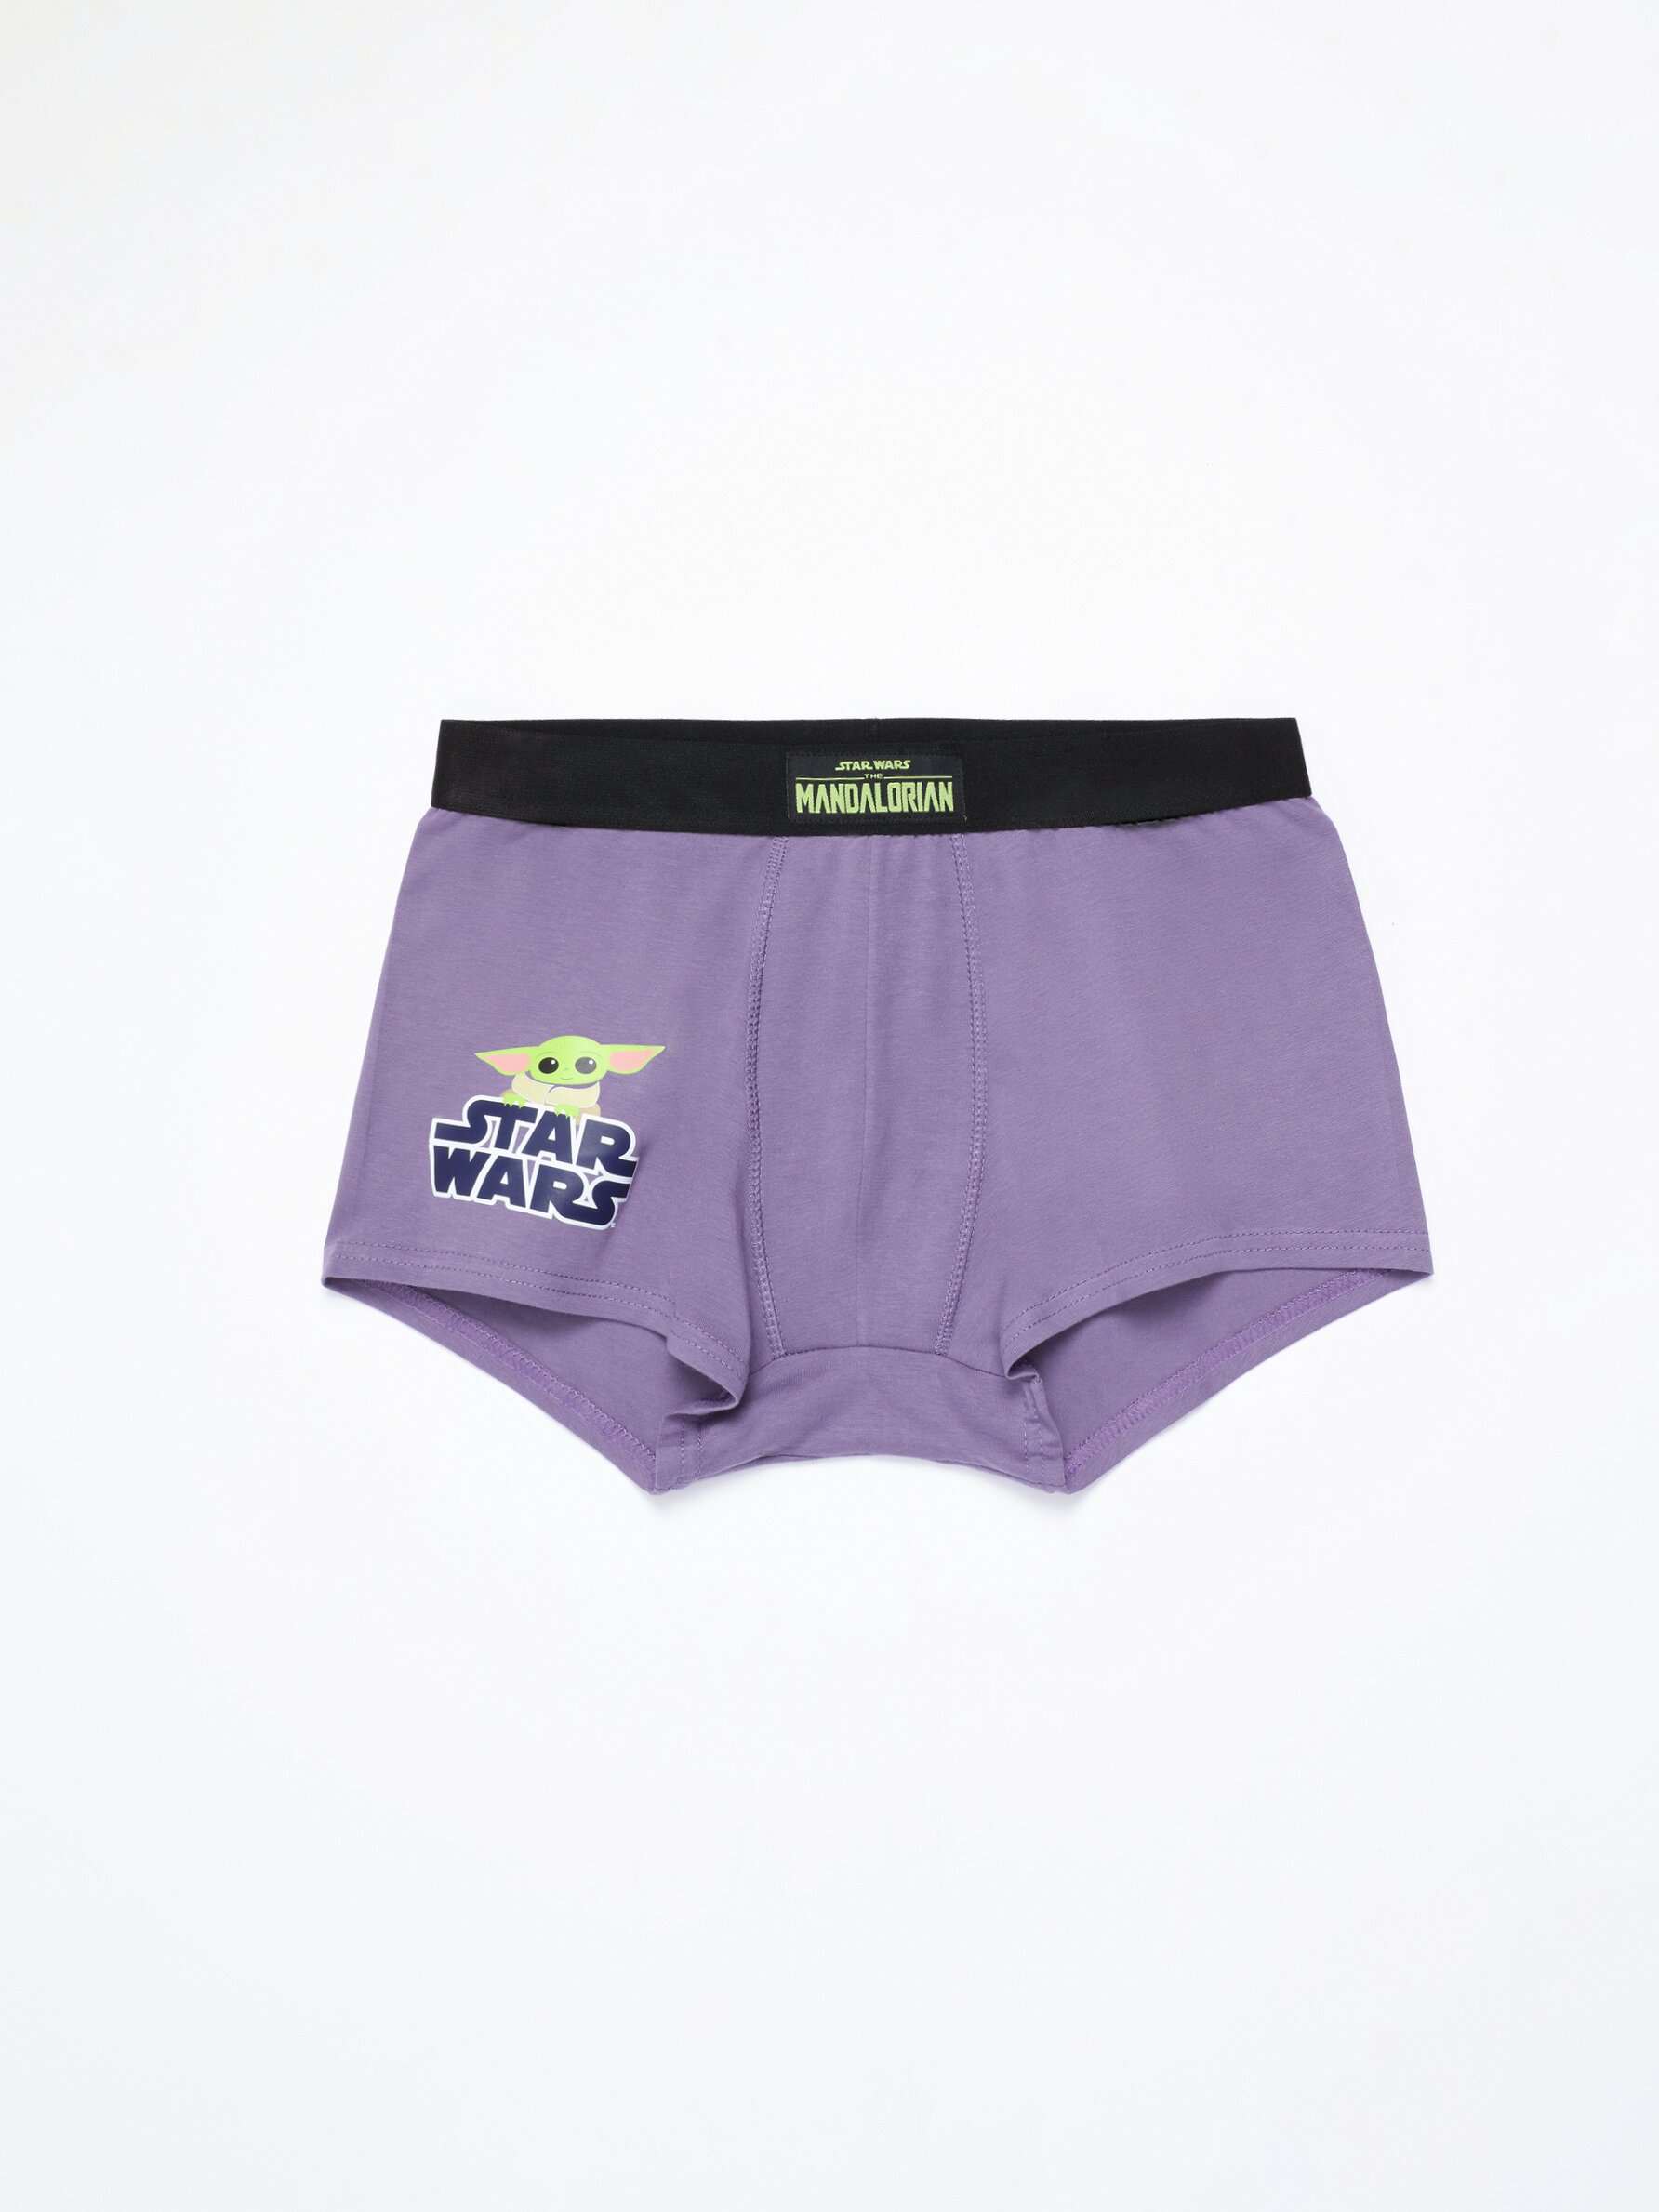 Star Wars Baby Yoda Girls Printed Cotton Underwear Brief 4 Pack